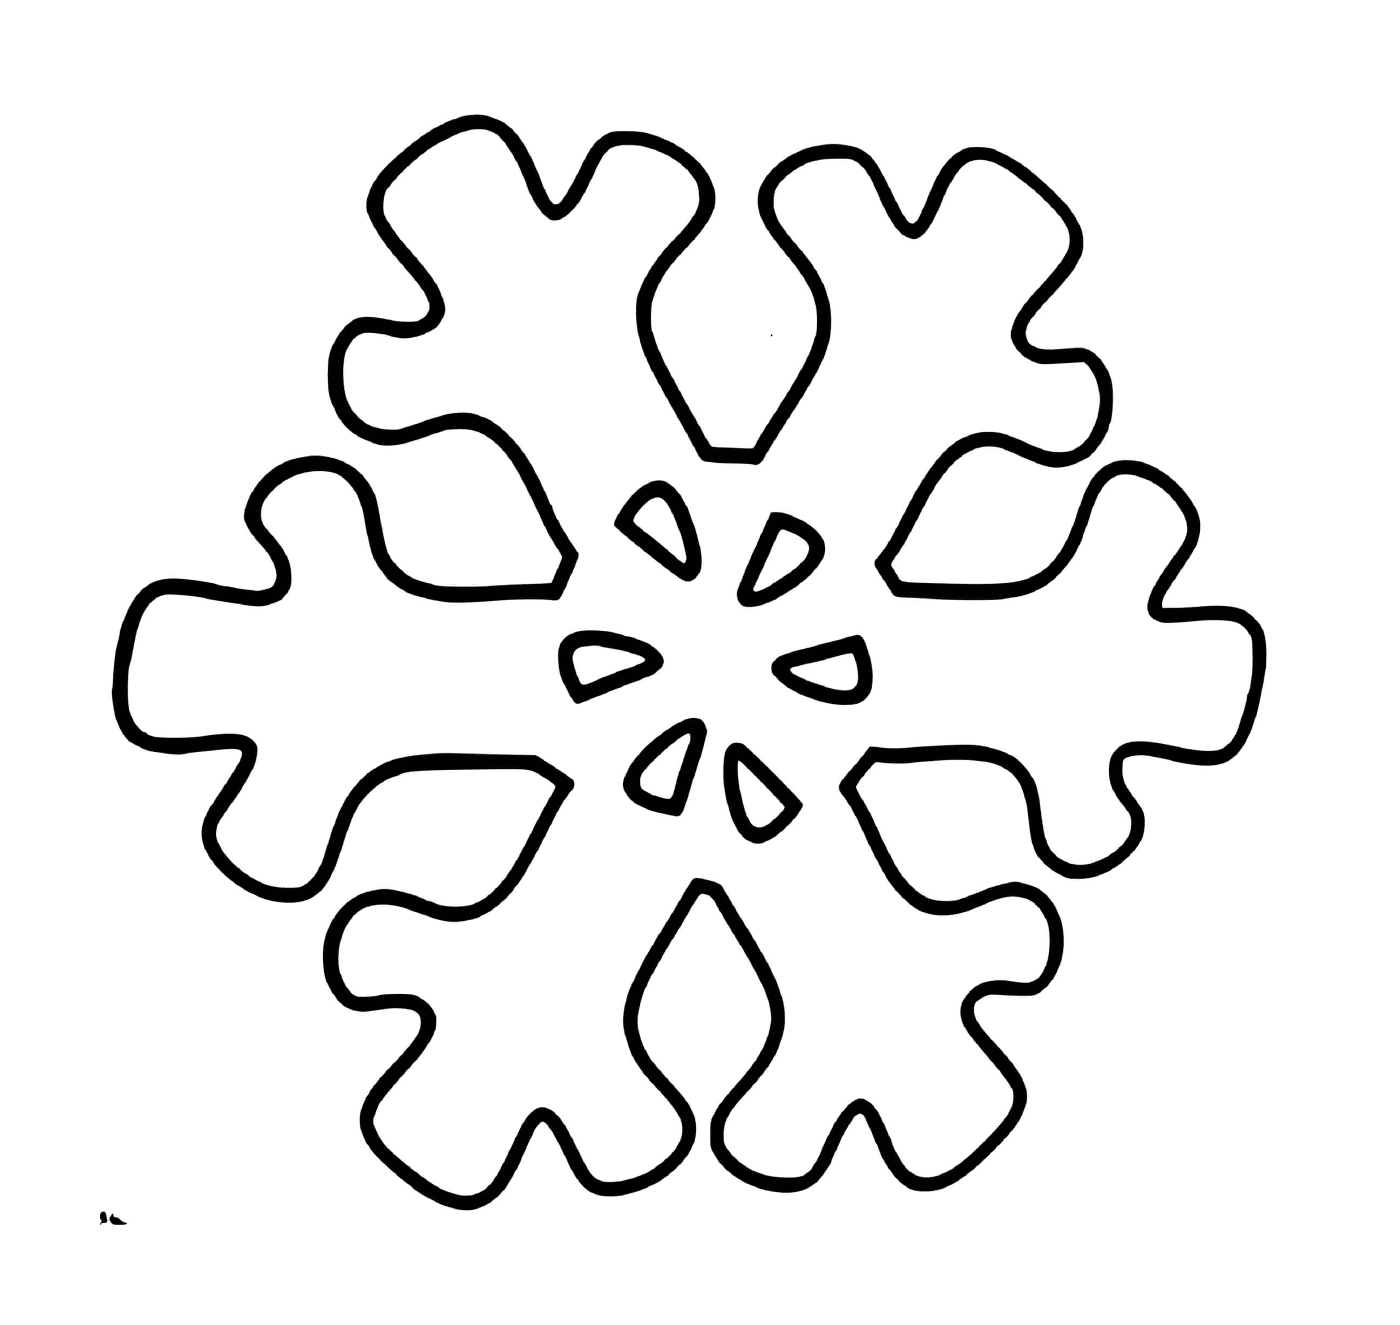  Um floco de neve cristalino 